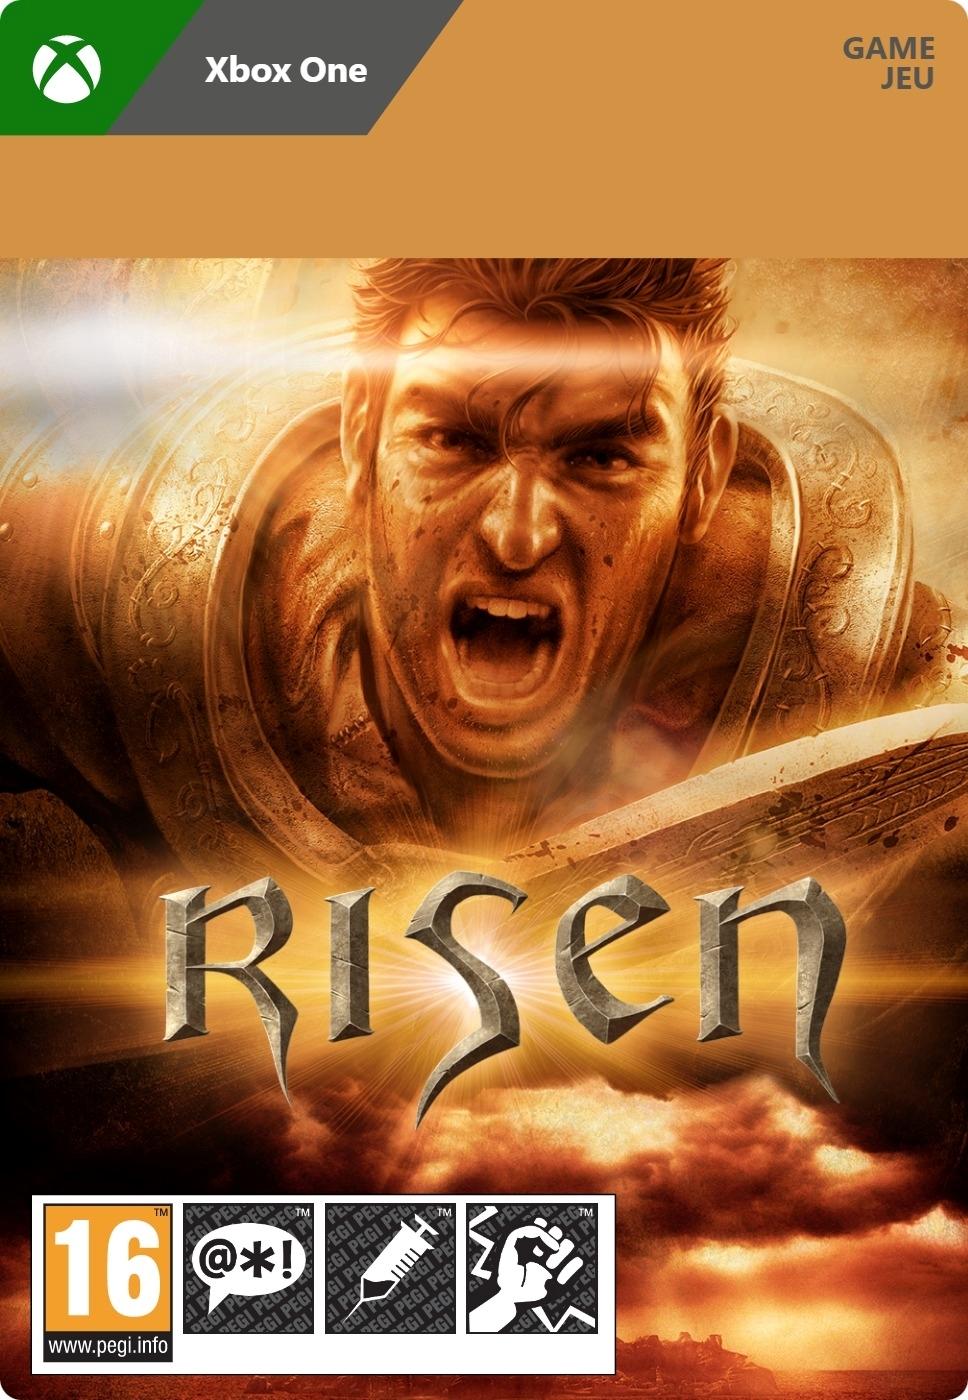 Risen - Xbox One - Game | G3Q-01495 (ee8f7a2b-2b30-564b-afba-02c9bac5a014)